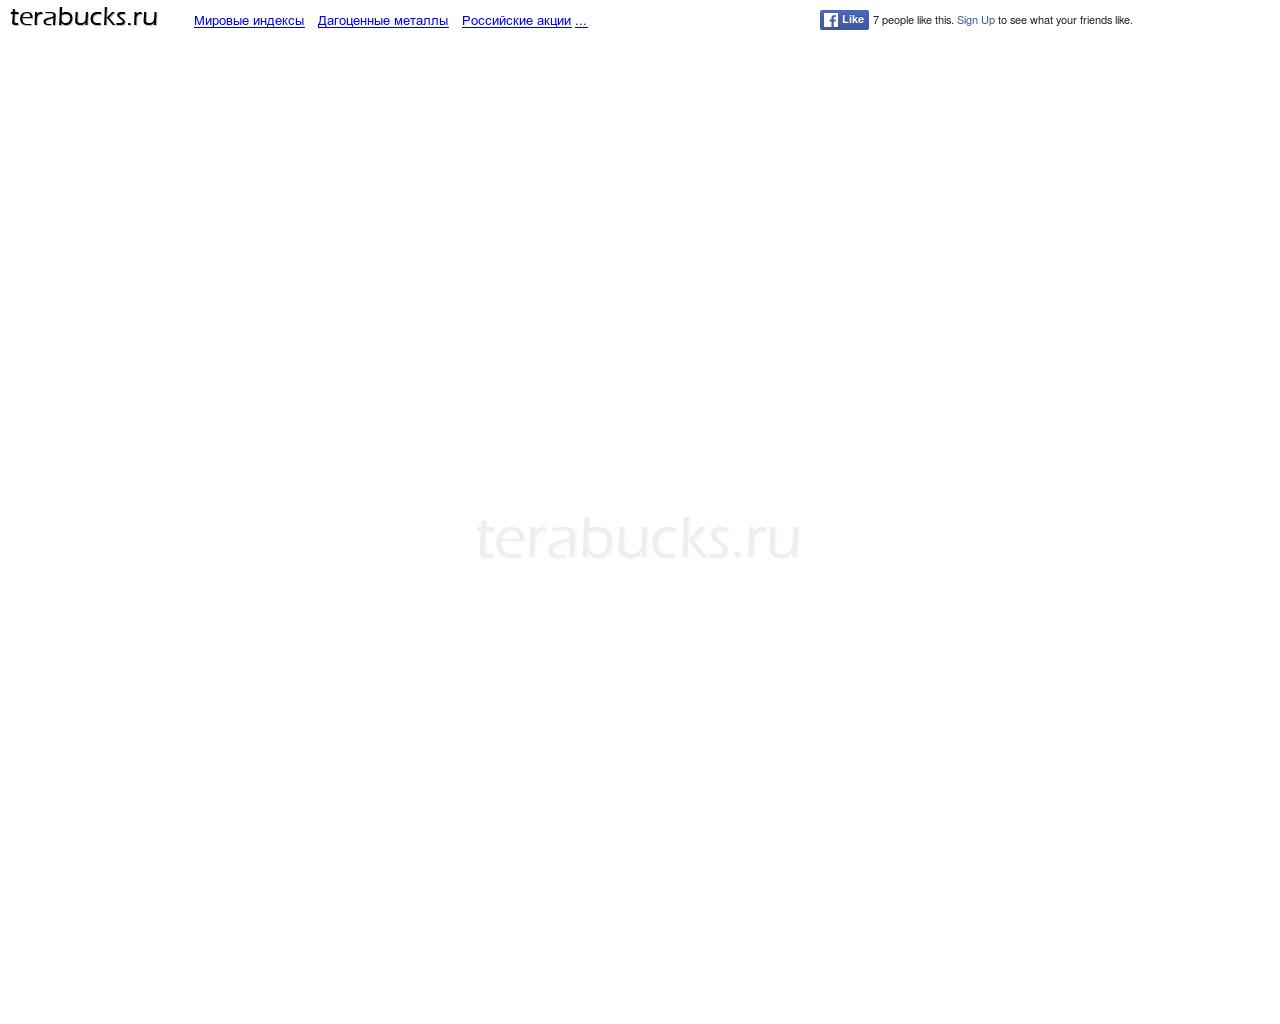 Изображение сайта terabucks.ru в разрешении 1280x1024